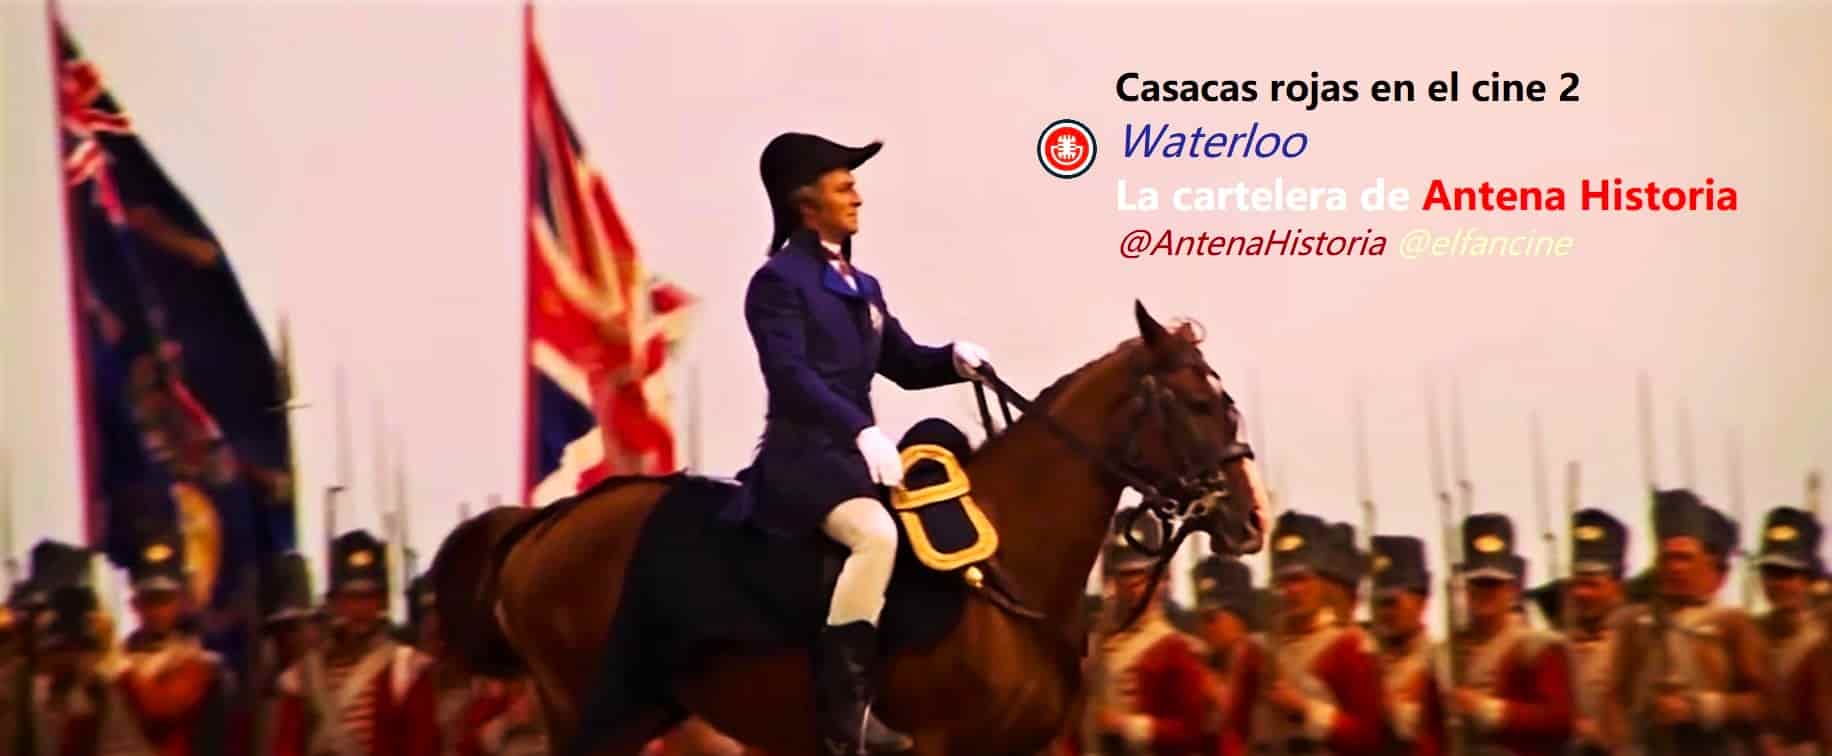 Waterloo - Casacas rojas en el cine - Napoleón en el cine - el fancine - Antena Historia - La cartelera de Antena Historia - ÁlvaroGP - Europa - Francia